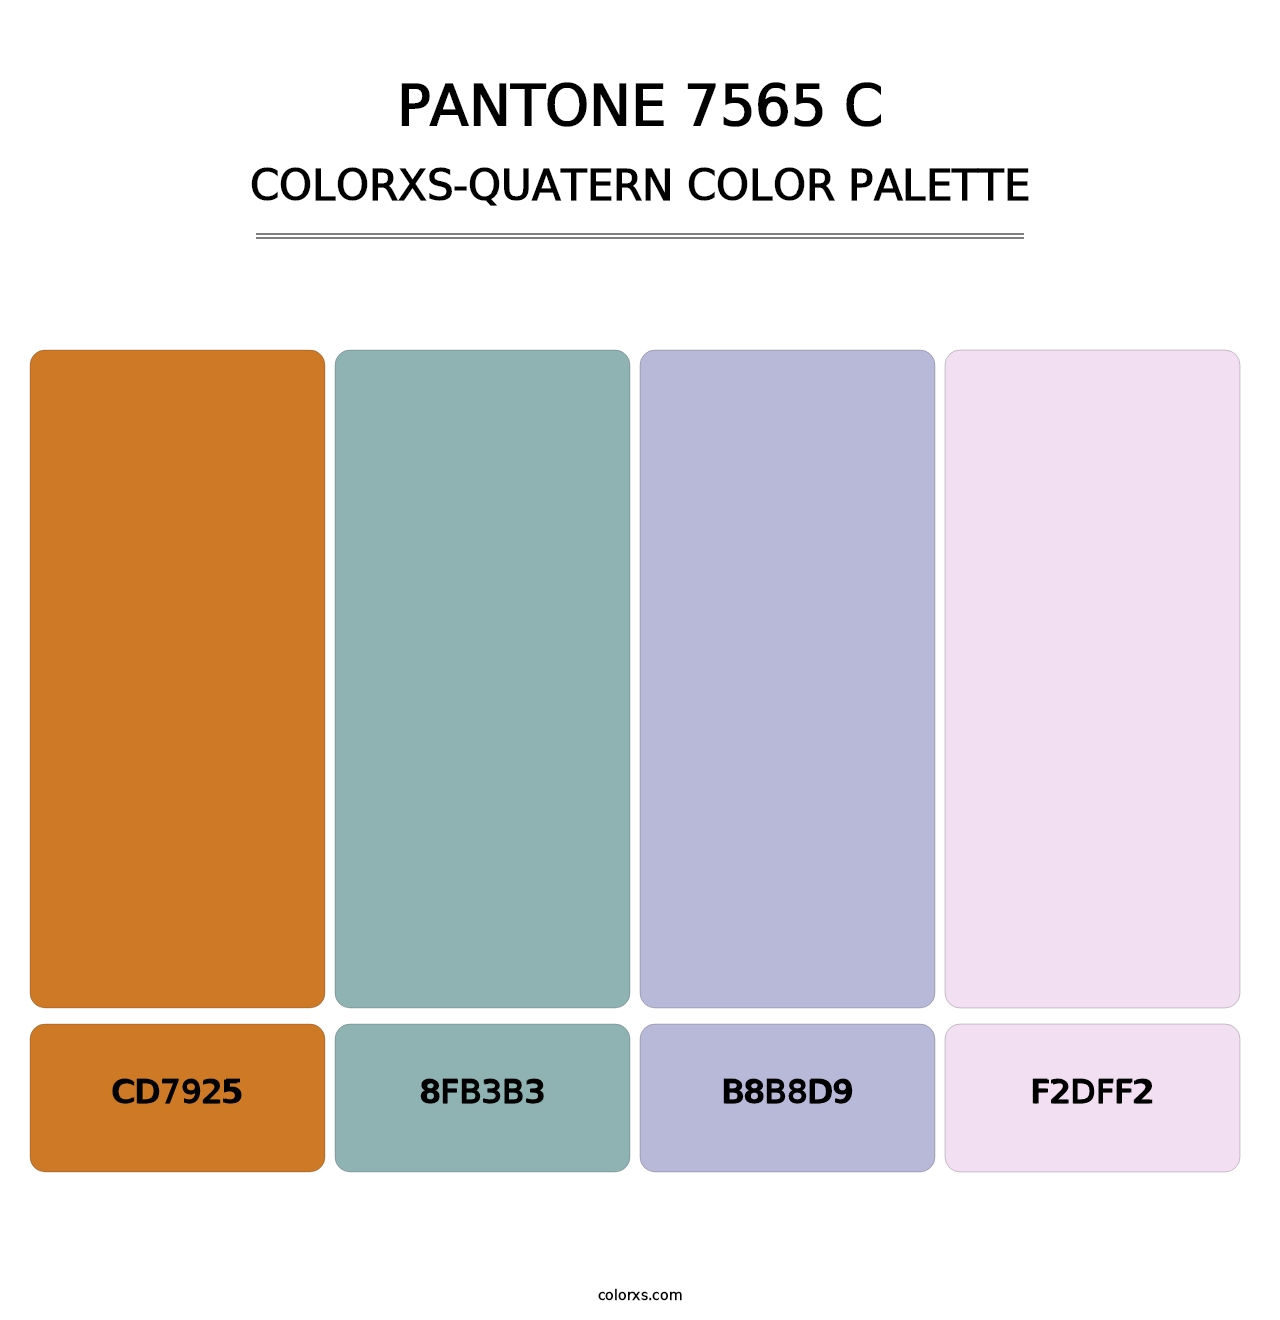 PANTONE 7565 C - Colorxs Quatern Palette